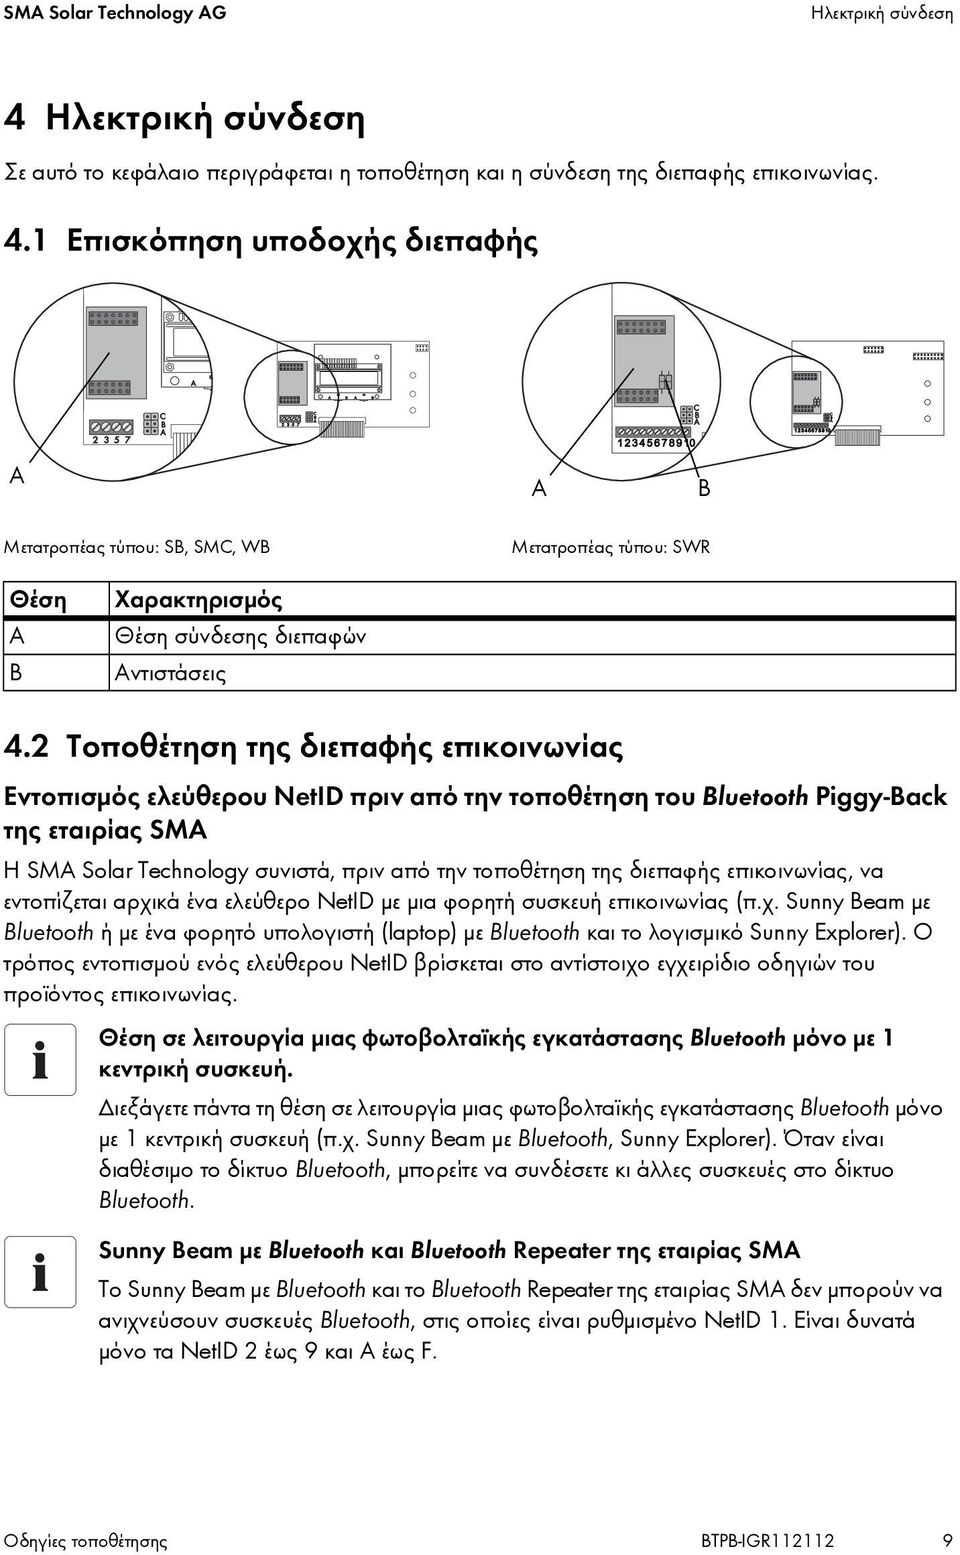 διεπαφής επικοινωνίας, να εντοπίζεται αρχικά ένα ελεύθερο NetID με μια φορητή συσκευή επικοινωνίας (π.χ. Sunny Beam με Bluetooth ή με ένα φορητό υπολογιστή (laptop) με Bluetooth και το λογισμικό Sunny Explorer).